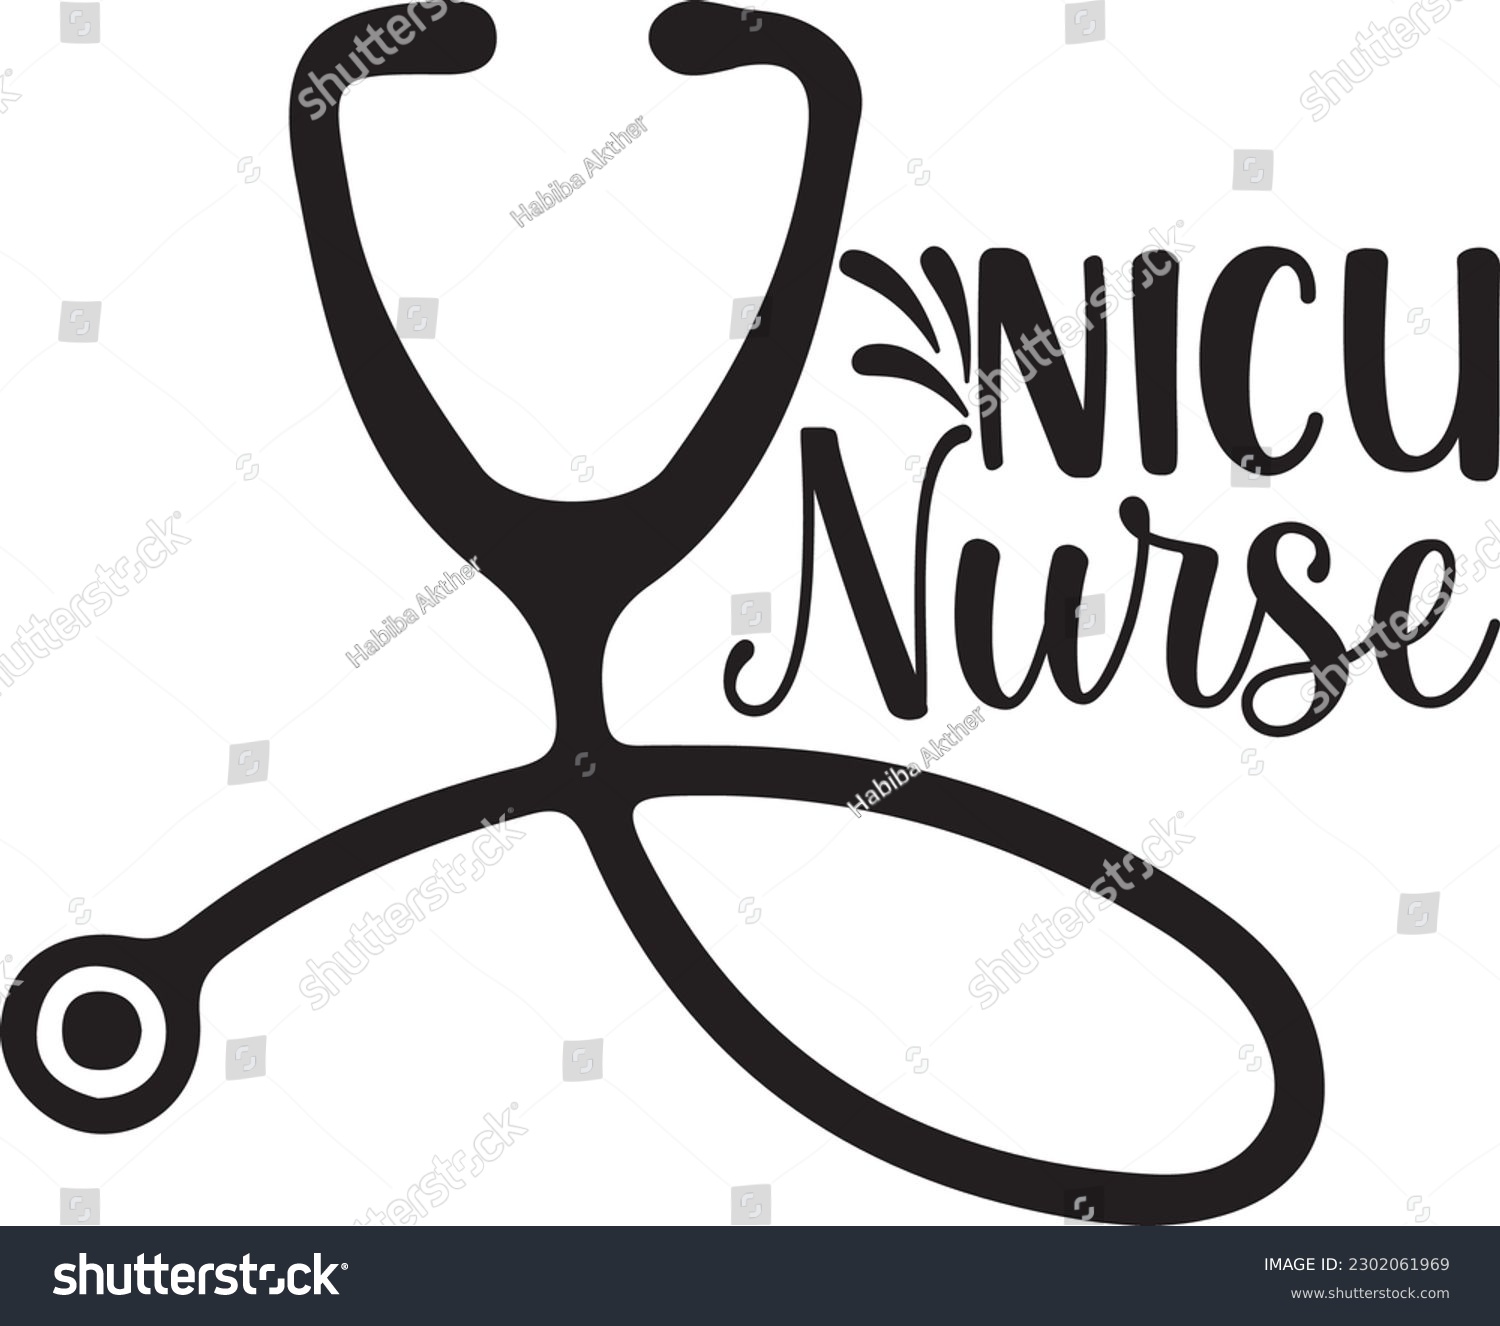 SVG of NICU nurse,Doctor's Day,#1 doctor,Doctor Svg,silhouette,Vector,Nurse SVG,Essential Worker,Hospital,Heart Stethoscope SVG,dentist svg,monogram svg,medical,Eps,uniform svg,Doctor Jacket svg,Doctor mug, svg